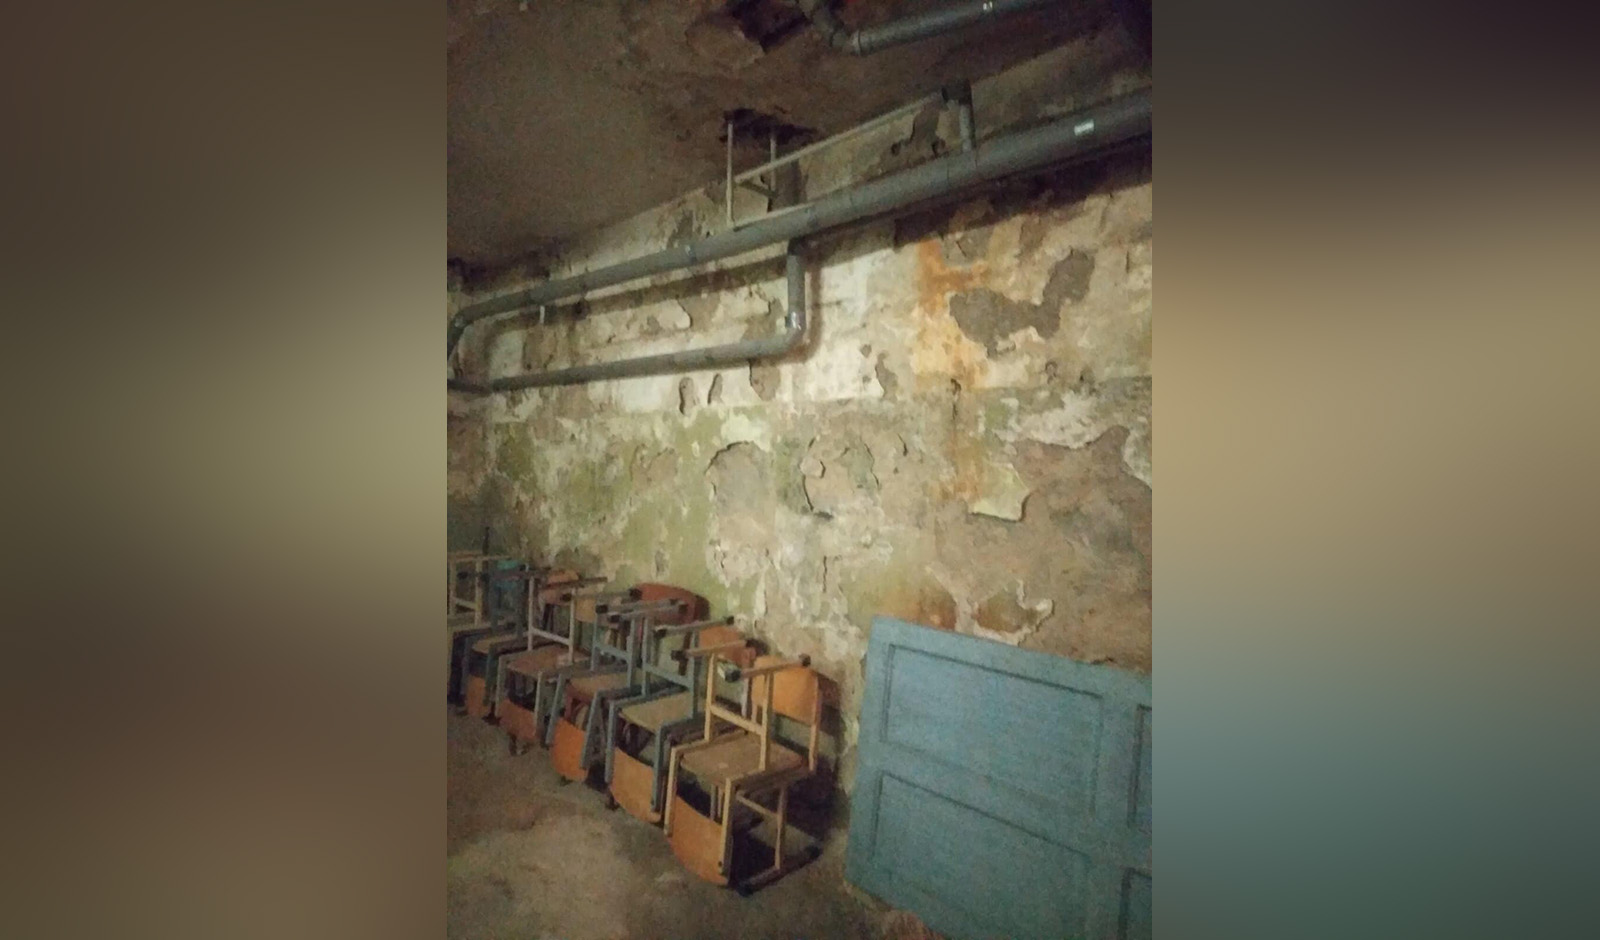 Ветхая мебель, грибок на стенах и потолках, общее антисанитарное состояние. Фото: ФБ Александры Борисовой